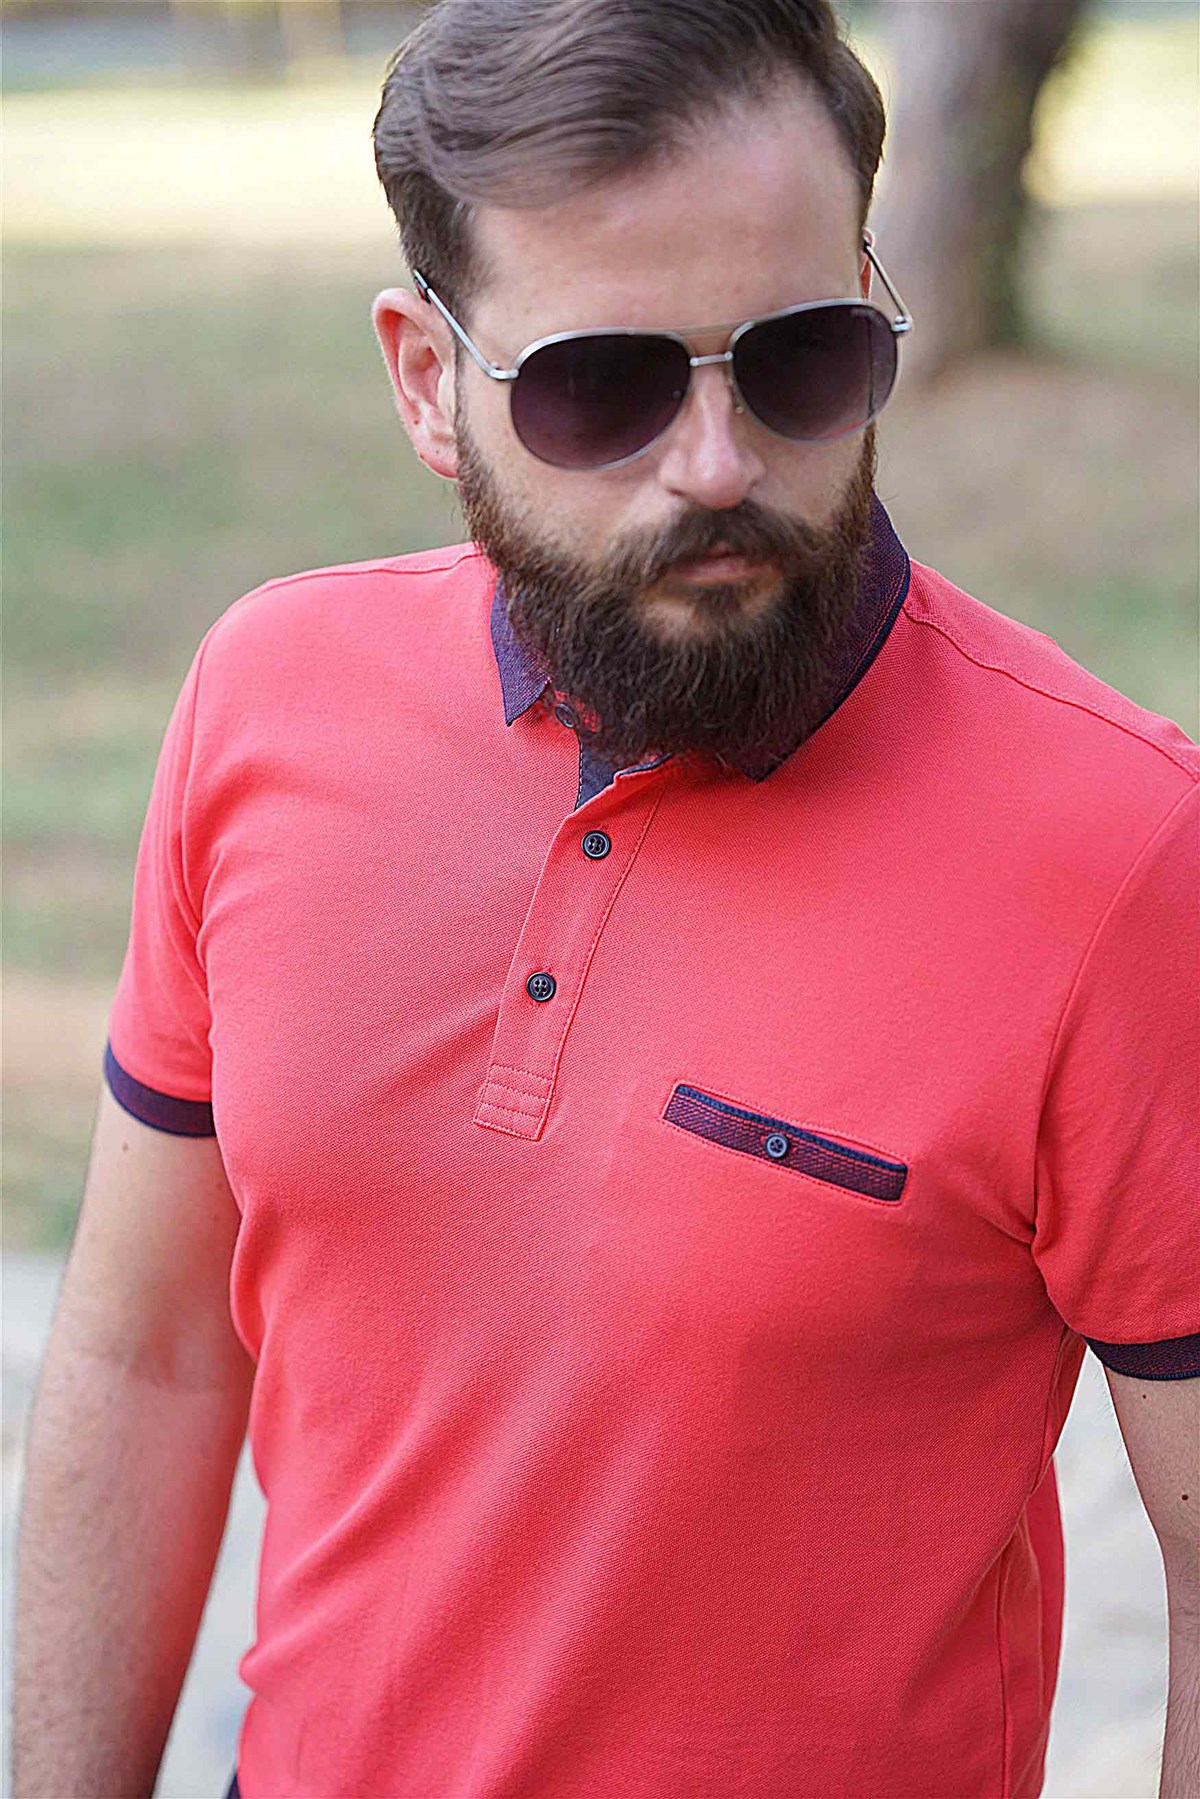 Ferraro Erkek Altı Lastik Polo Yaka T-Shirt - Nar Çiçeği | Erkek Giyim |  modaferraro.com.tr